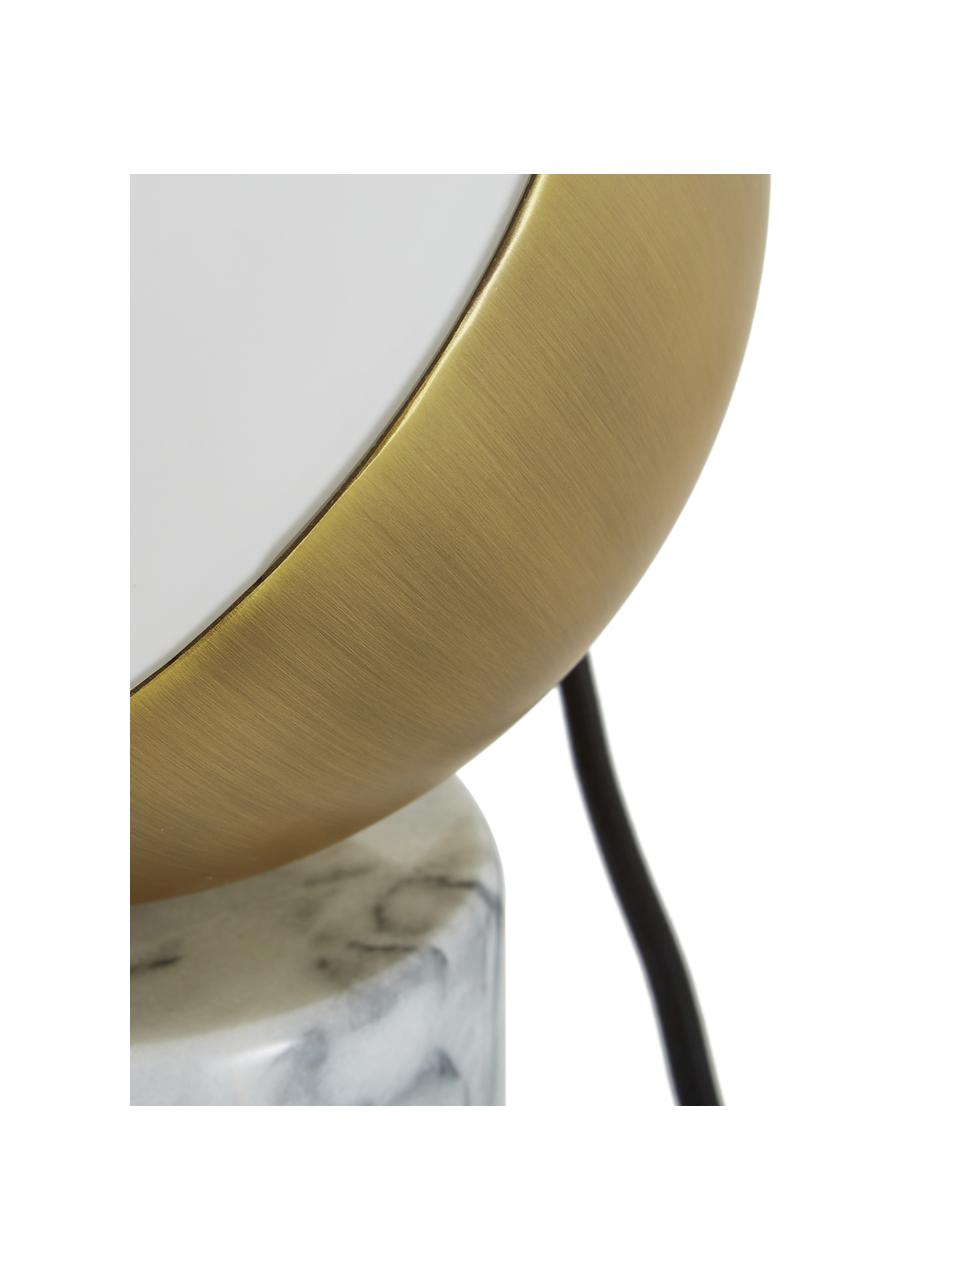 Marmor-Tischlampe Svea, Lampenfuß: Marmor, Lampenschirm: Metall, Glas, Lampenfuß: Weißer MarmorLampenschirm: Weiß, Goldfarben, Ø 15 x H 25 cm